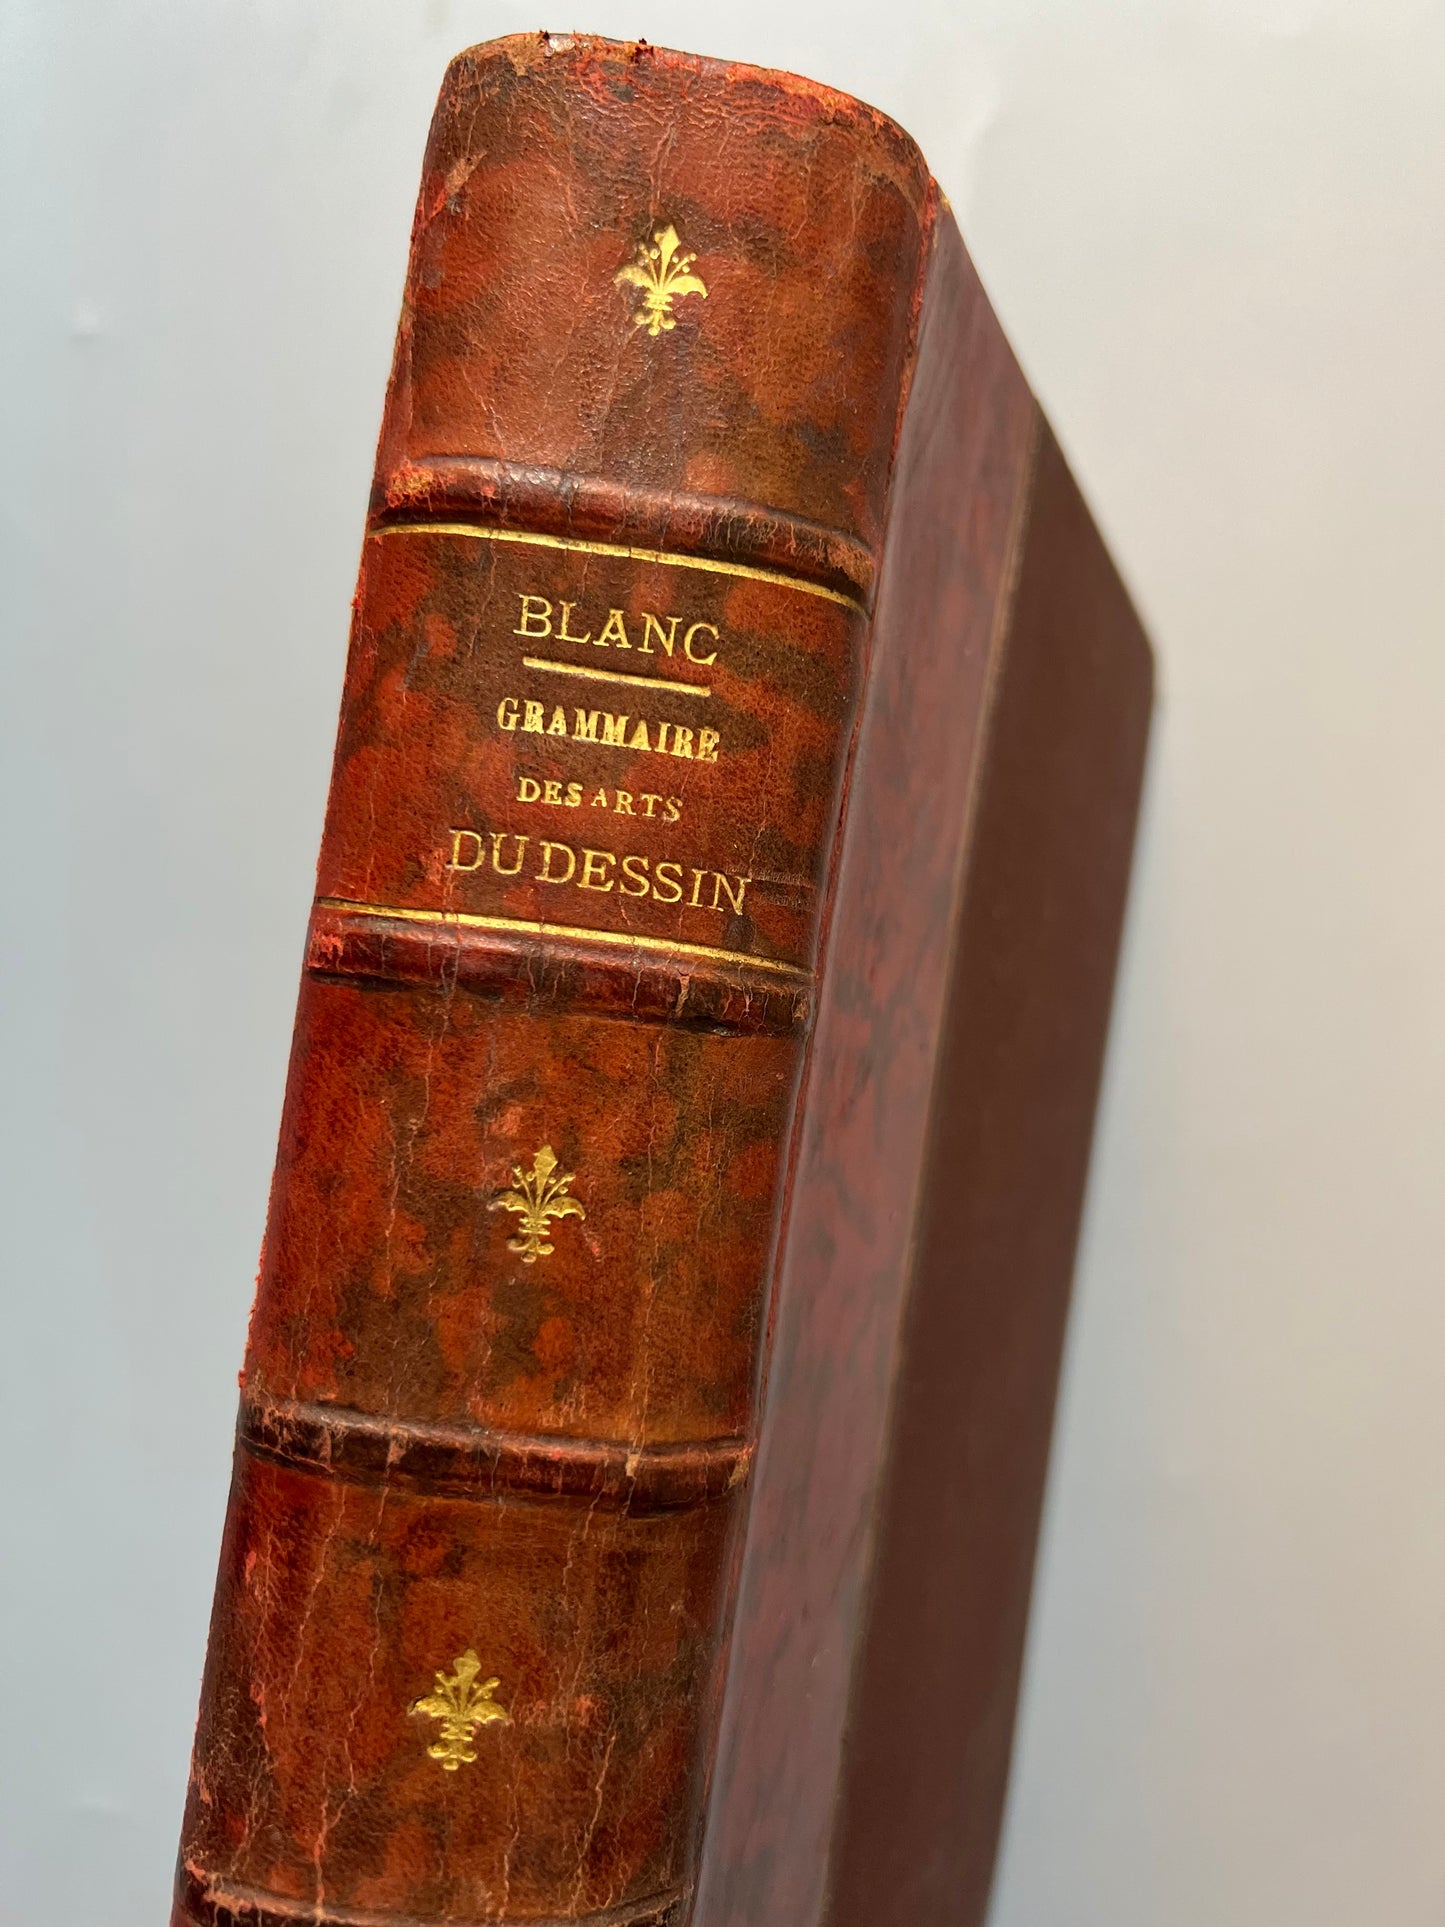 Grammaire des arts du dessin, M. Charles Blanc - Libraire Renouard, 1888